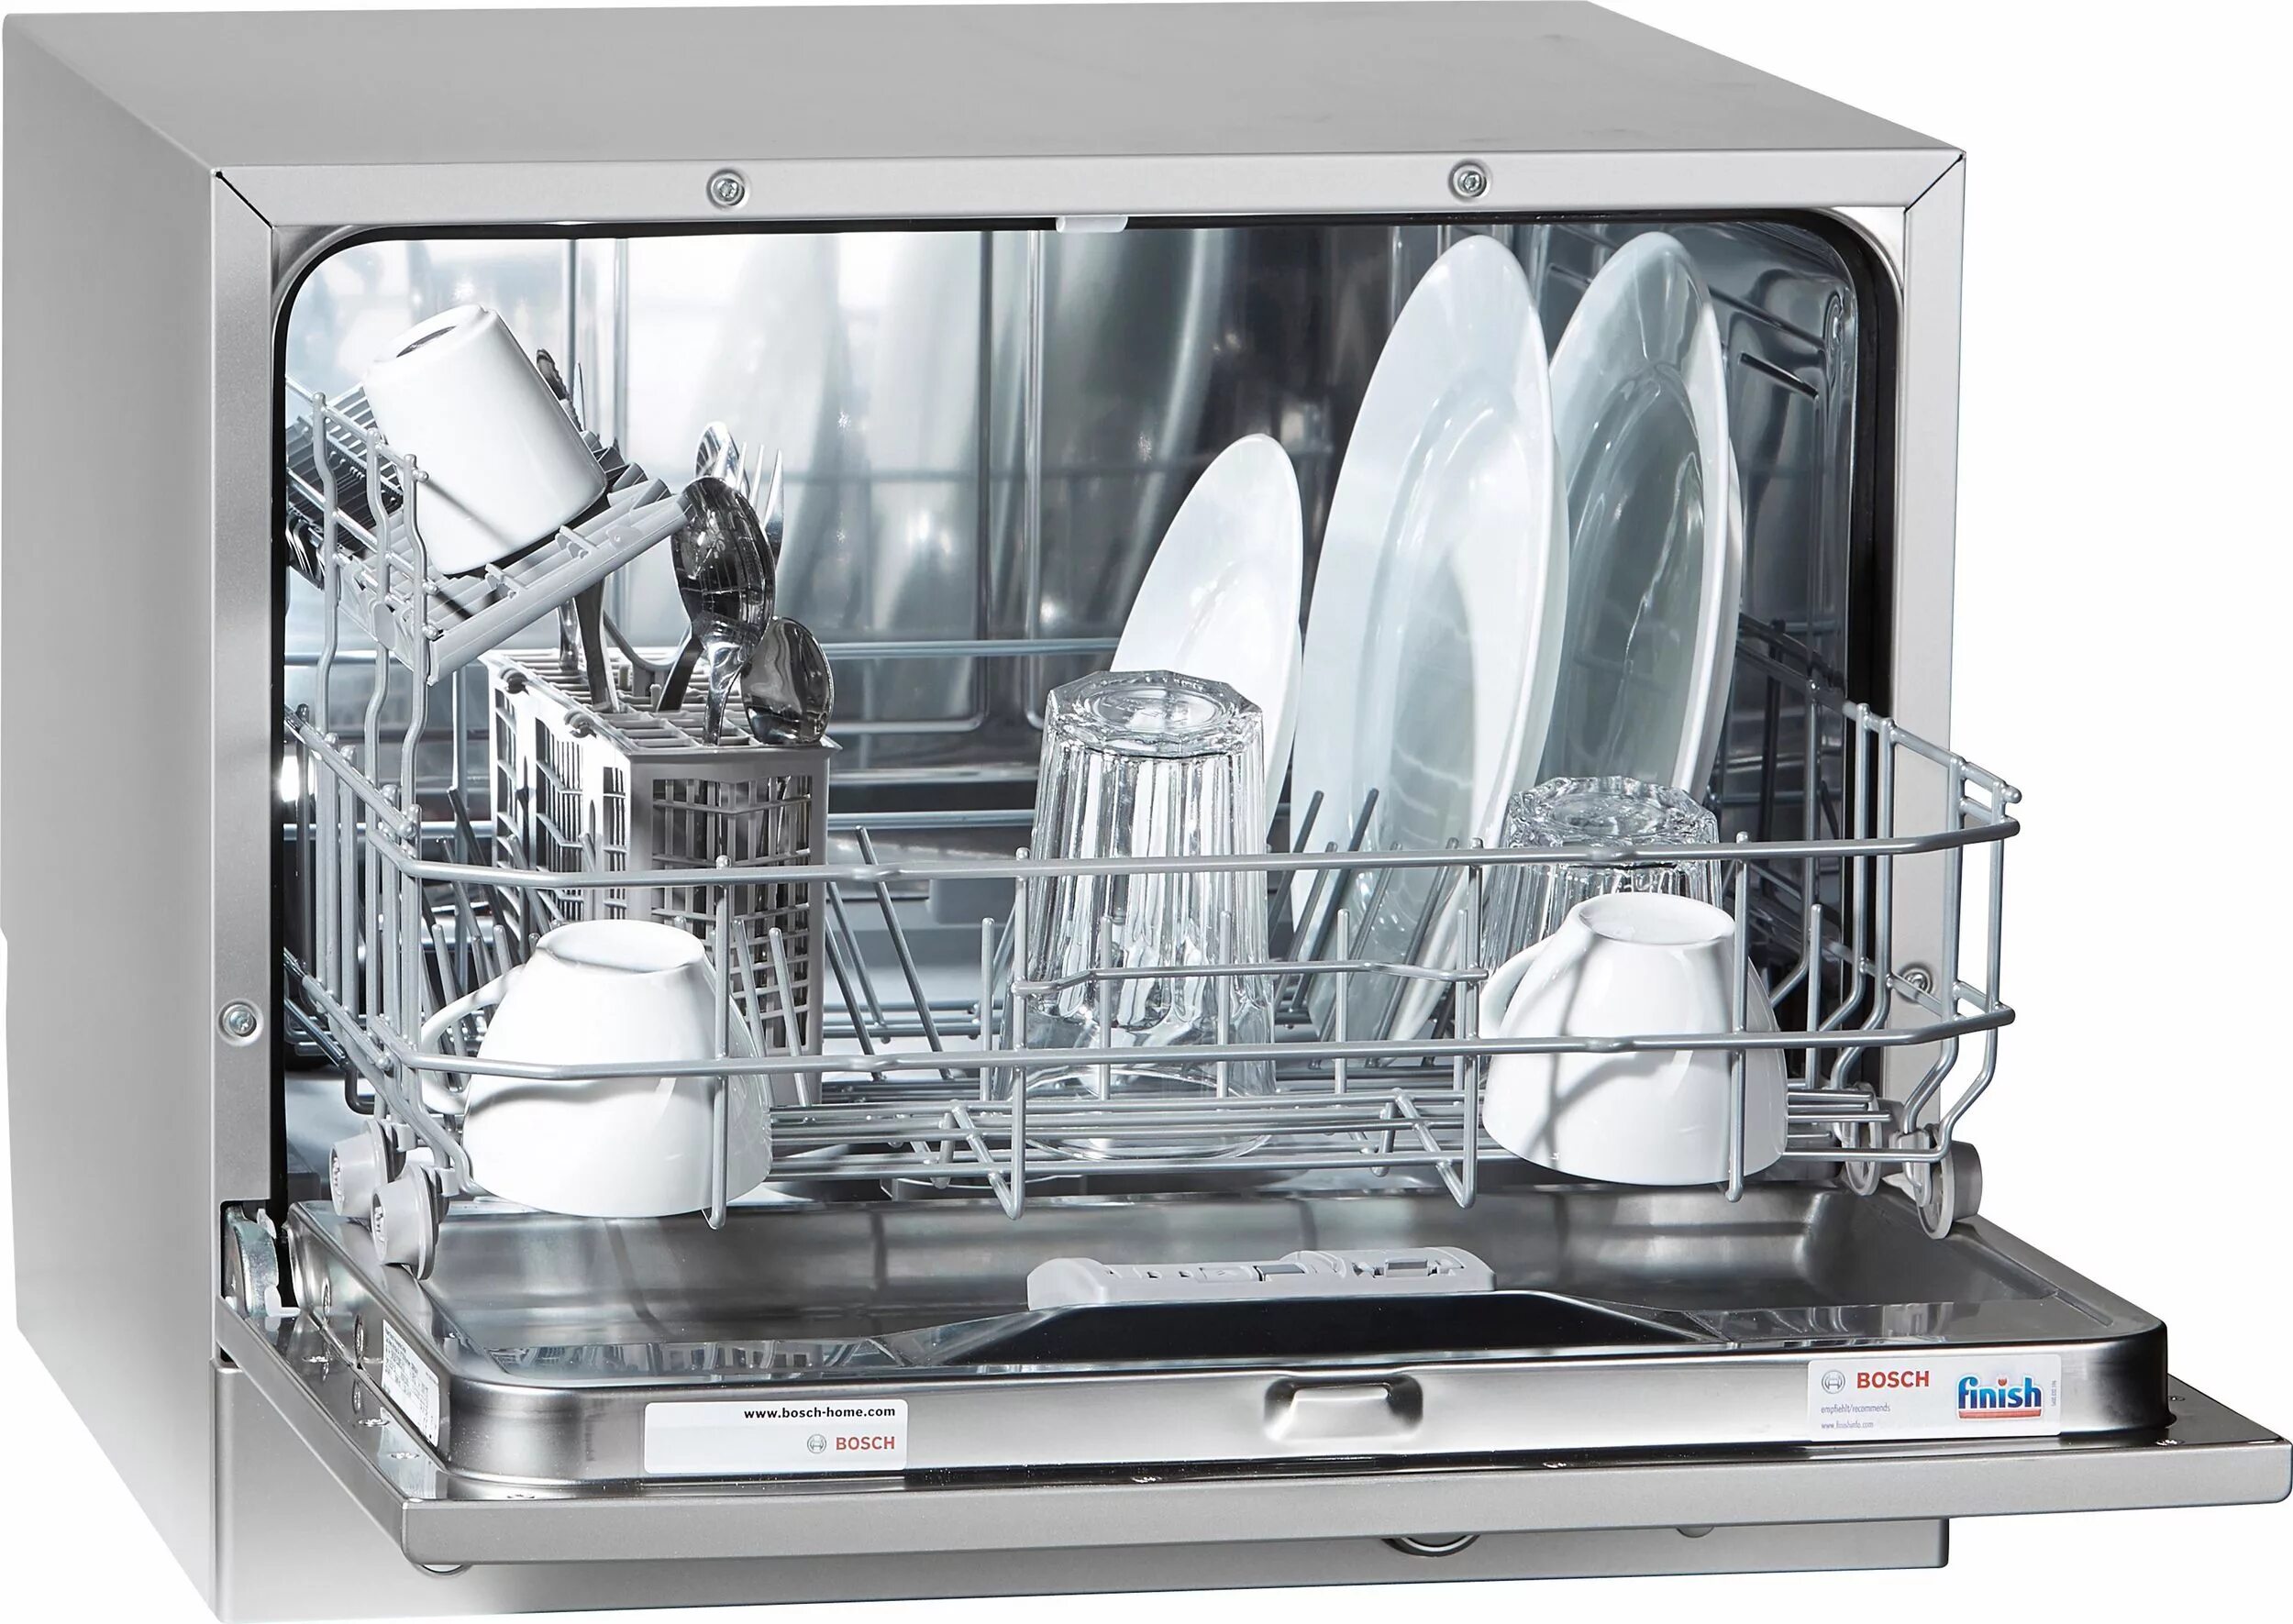 Посудомойка bosch купить. Посудомоечная машина Bosch SKS 51e28. Посудомоечная машина бош настольная sks51e88. Компактная посудомоечная машина Bosch sks51e32eu, белый. Компактные посудомоечные машины Bosch s2r1b.